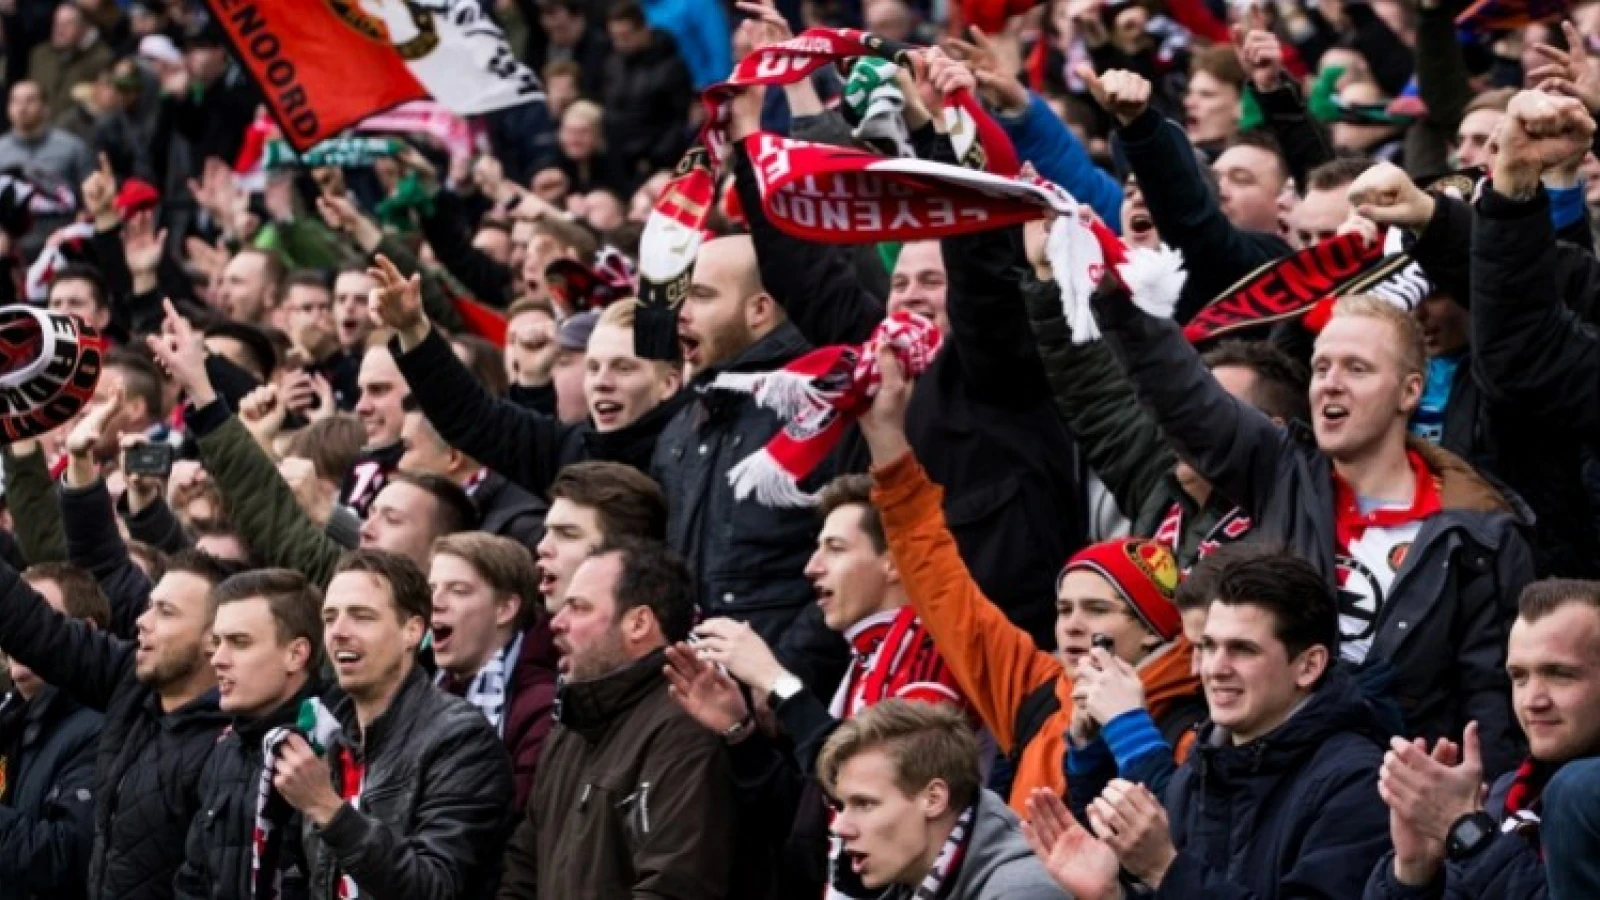 'Feyenoordfans toegang ontzegd tot uitwedstrijd in Napels'